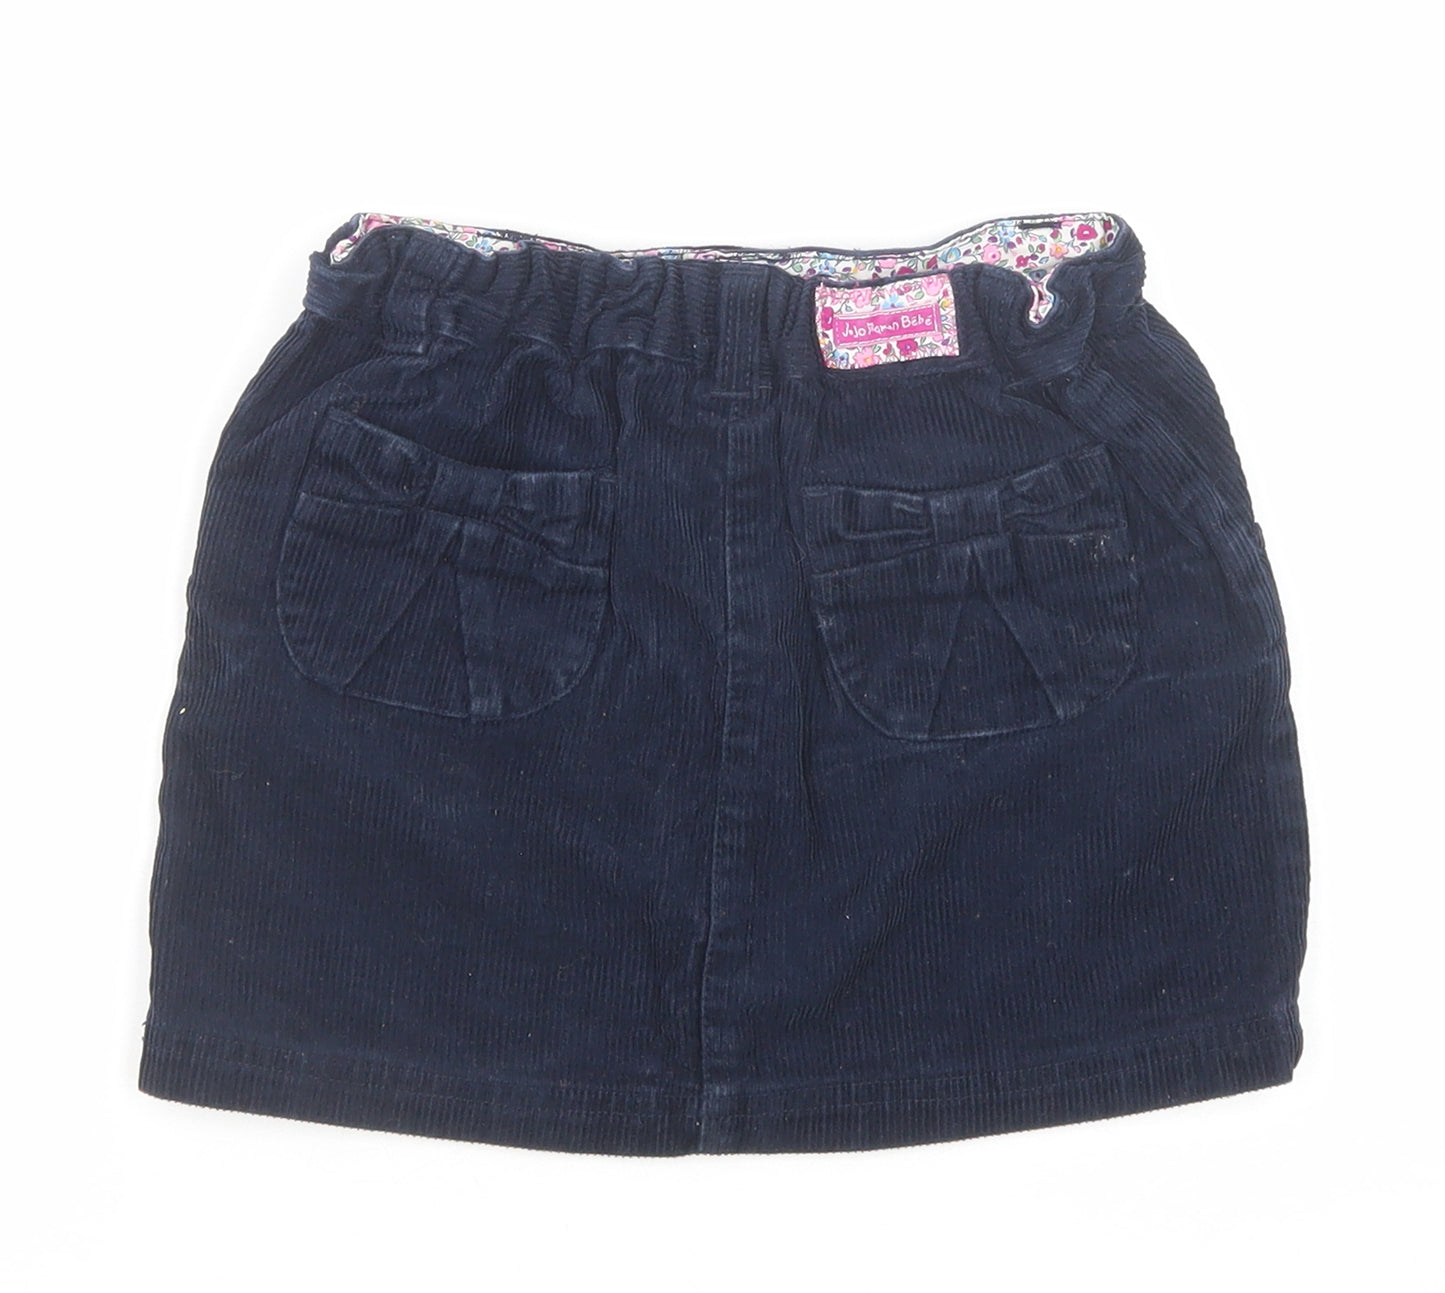 JoJo Maman Girls Blue Cotton A-Line Skirt Size 4-5 Years Regular Button